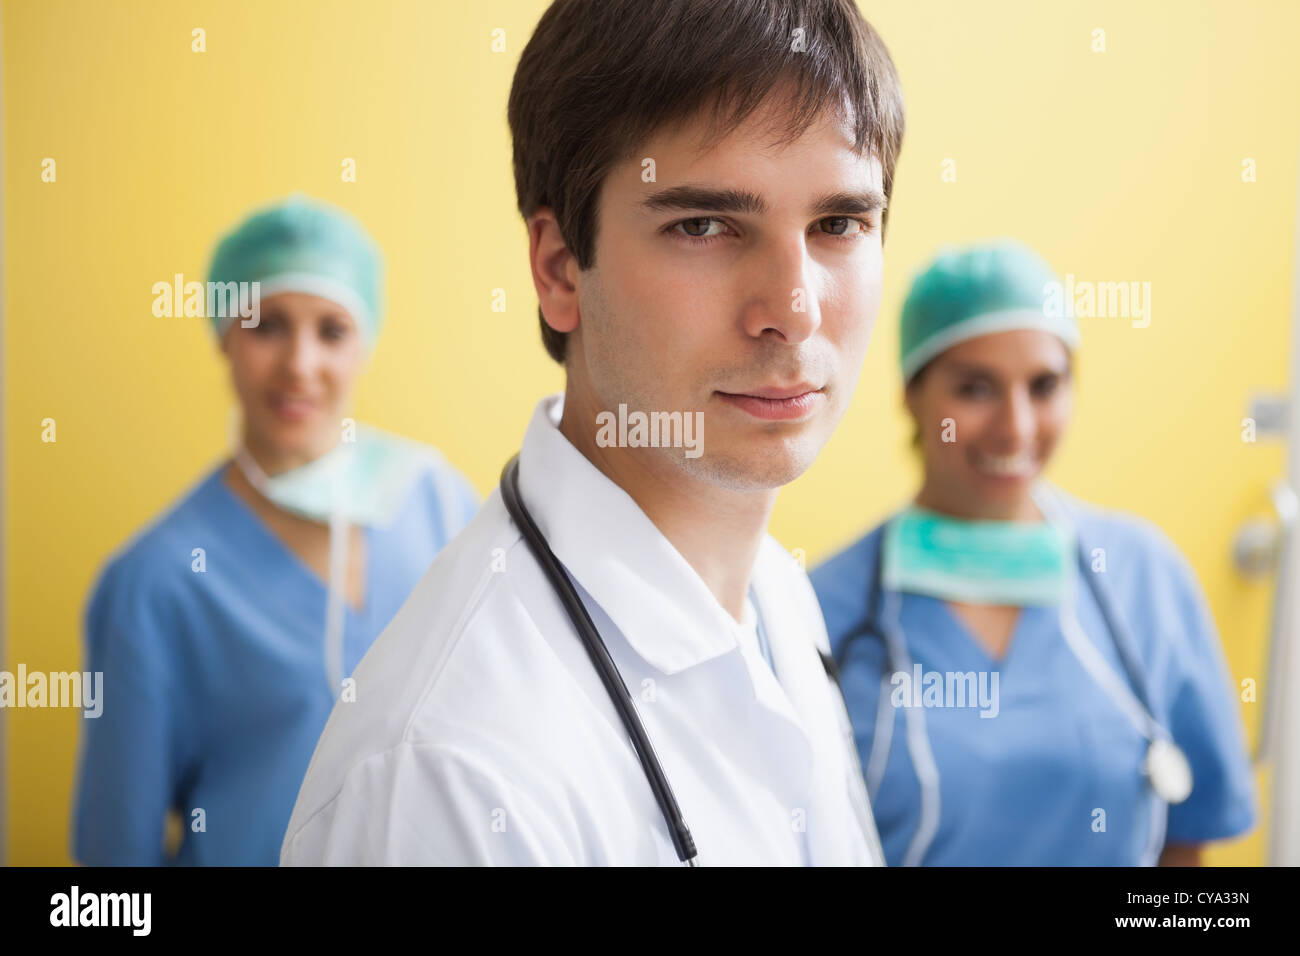 Médecin avec deux infirmières smiling Banque D'Images